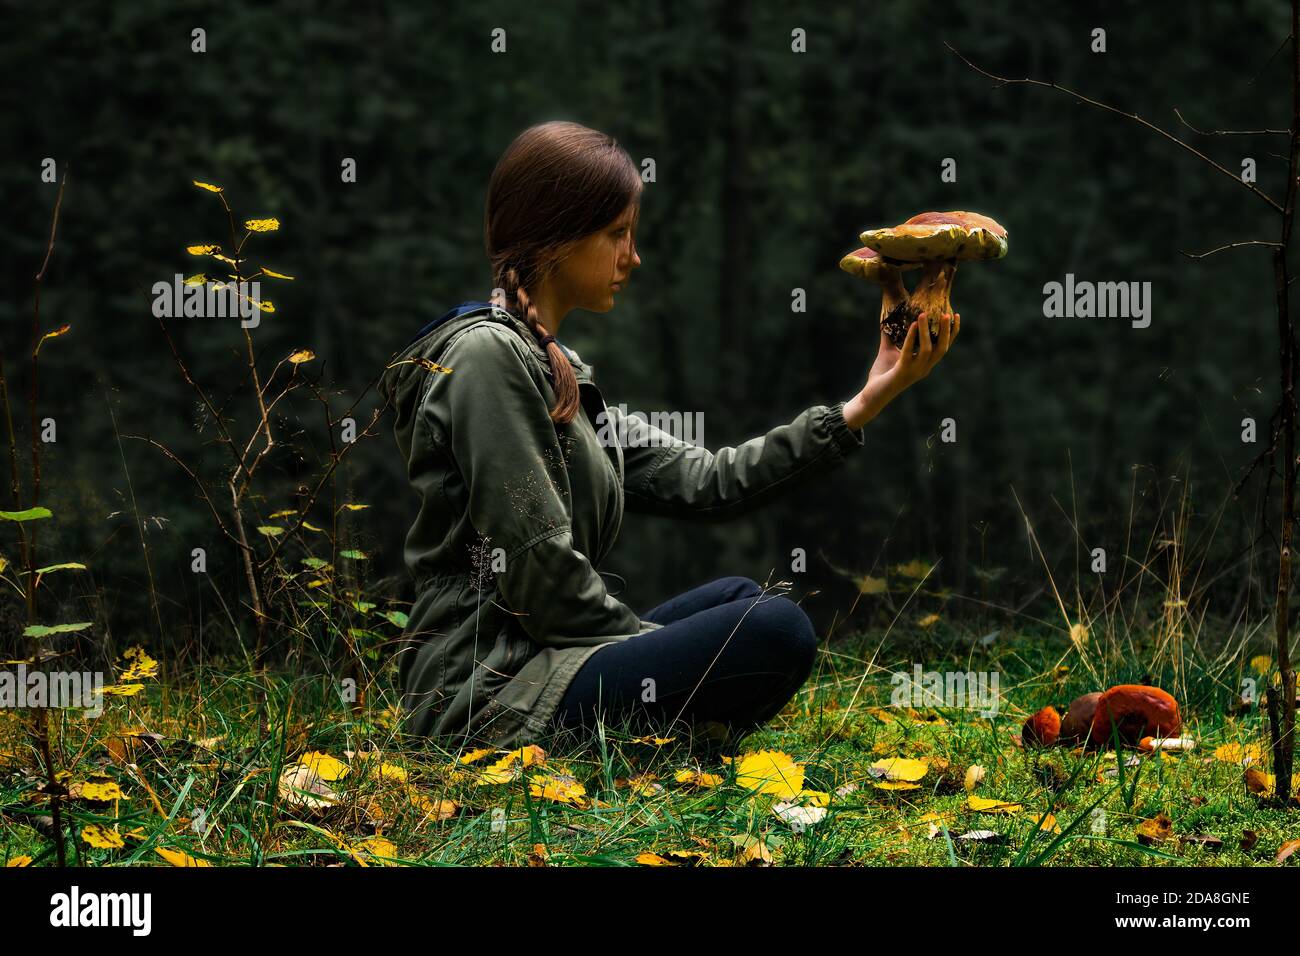 Une femme assise en forêt, tenant et vérifiant les champignons sauvages à la main. Concept de risque d'empoisonnement aux champignons. Chasse aux champignons, cueillette et cueillette en toute sécurité. Banque D'Images